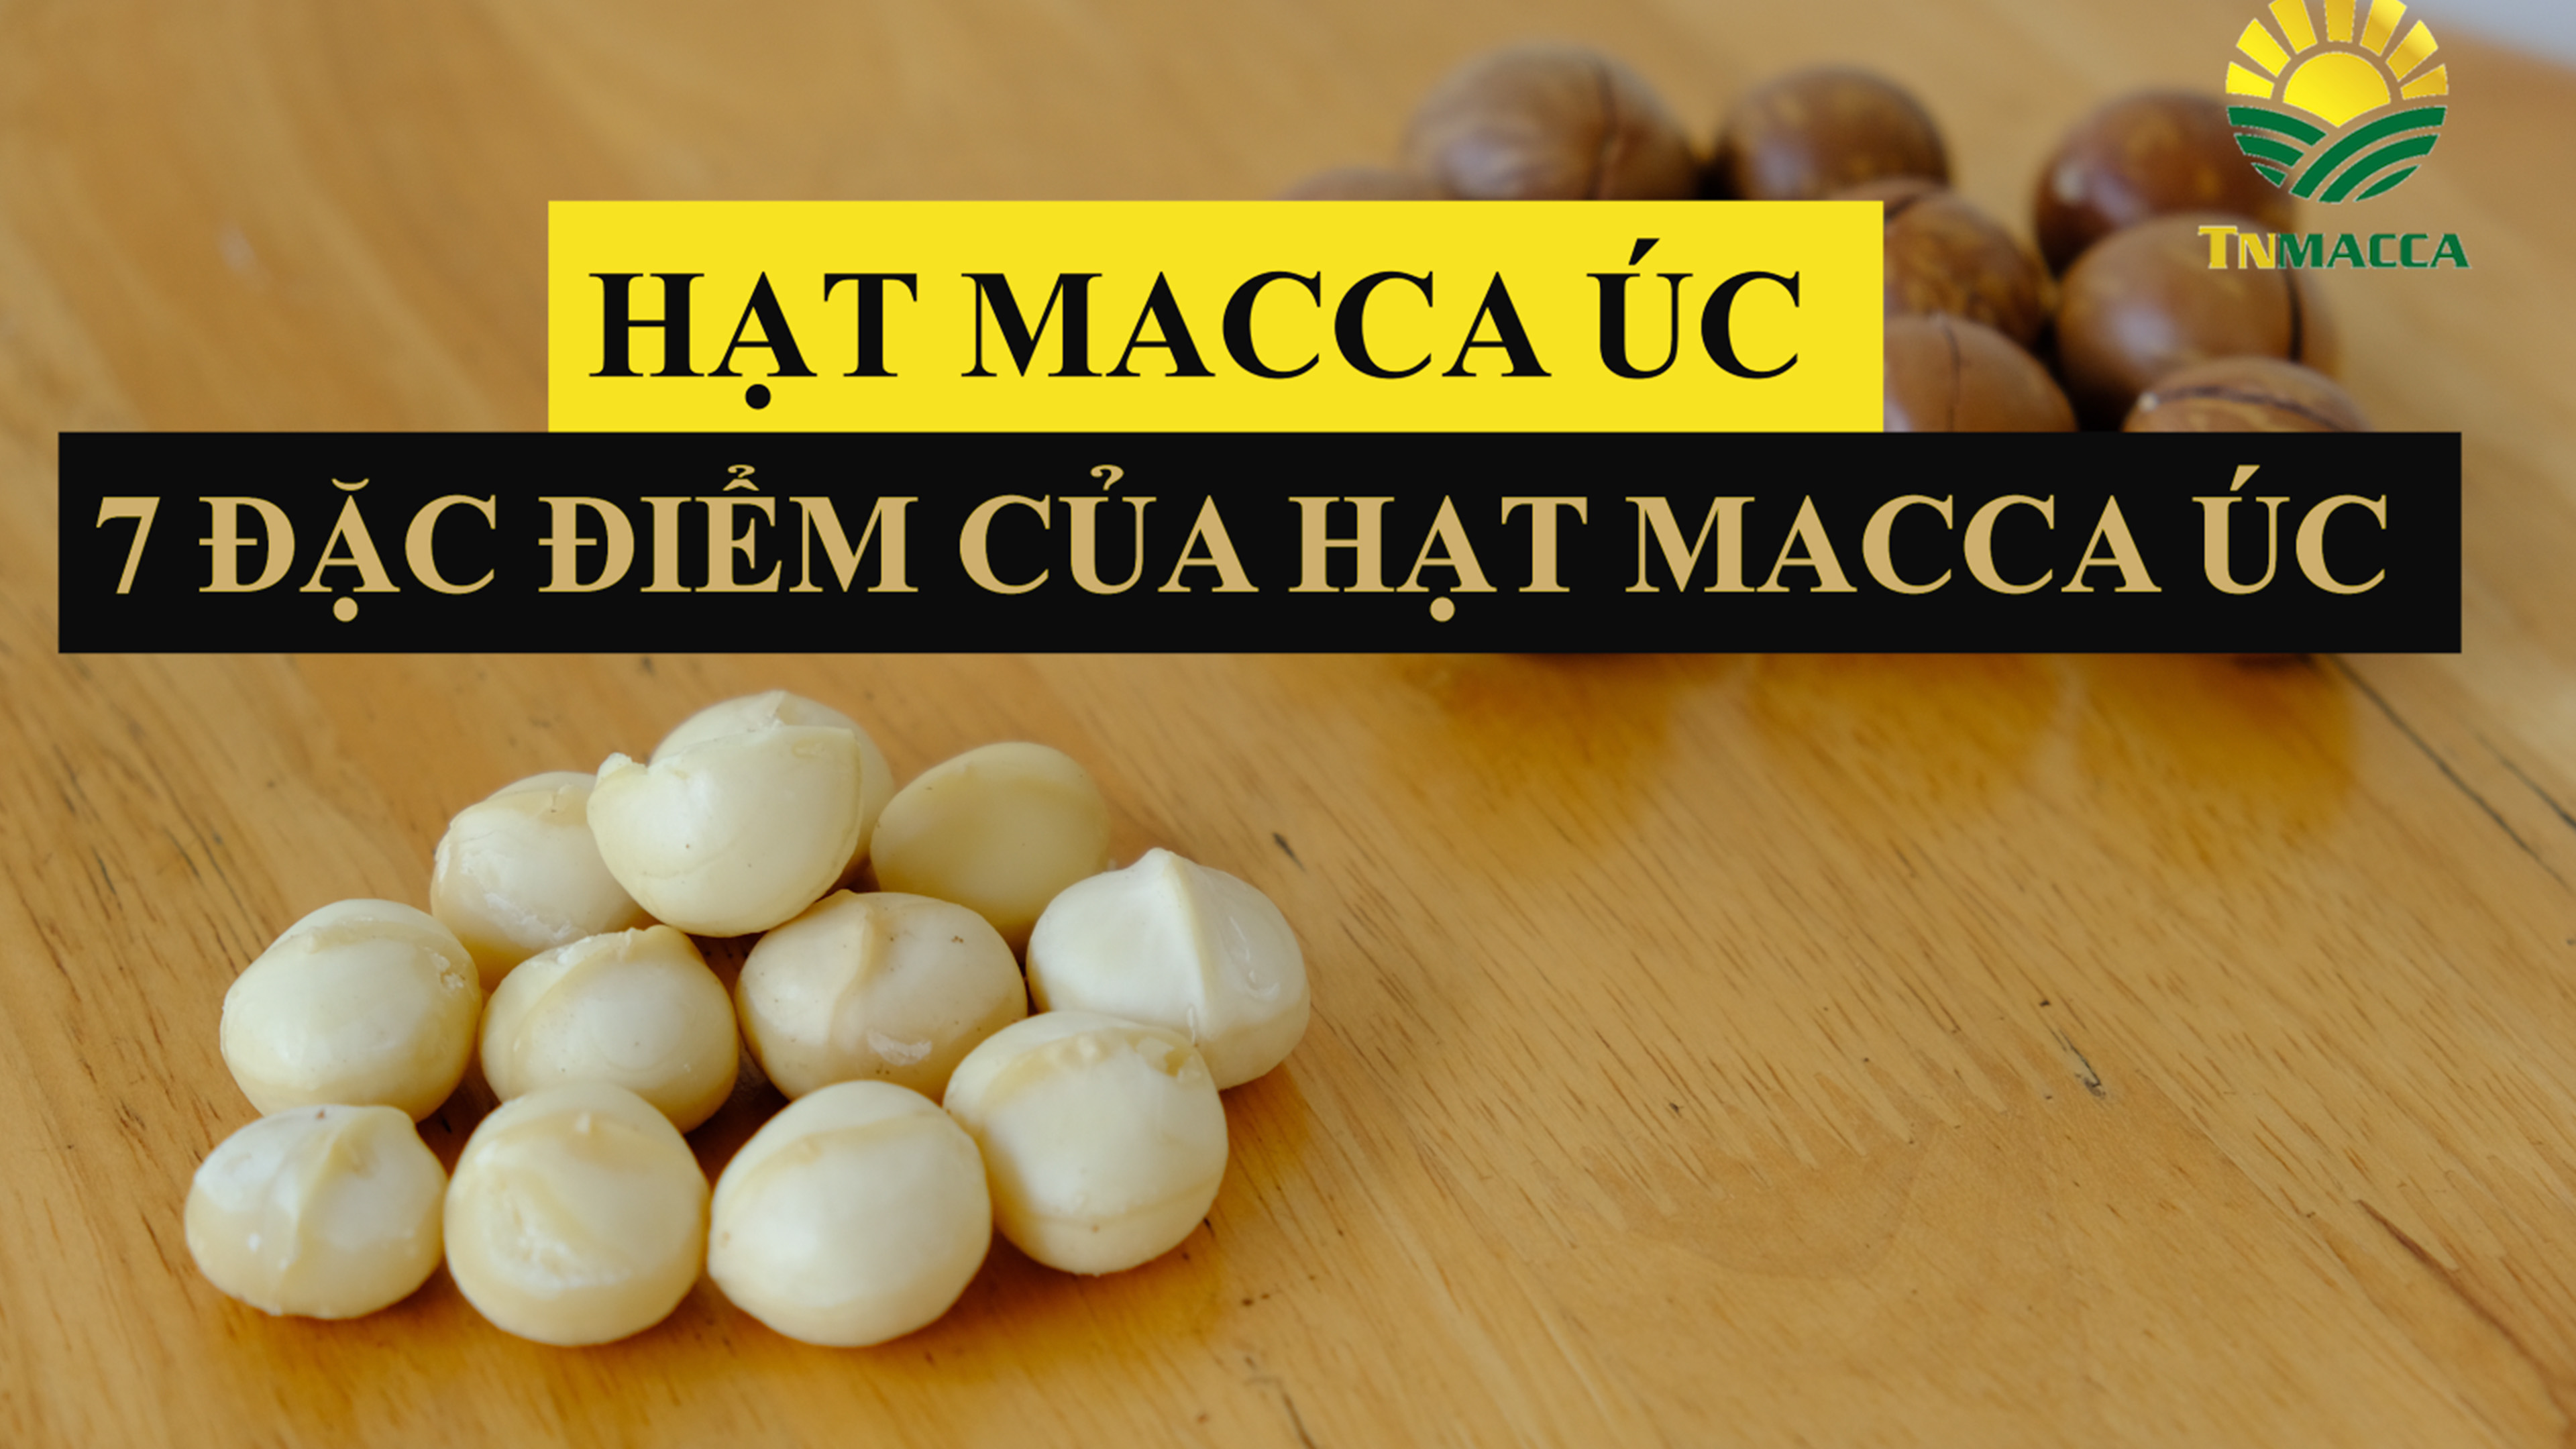 Hạt macca úc : 7 đặc điểm chính của hạt macca úc để bạn tham khảo trước khi mua sản phẩm